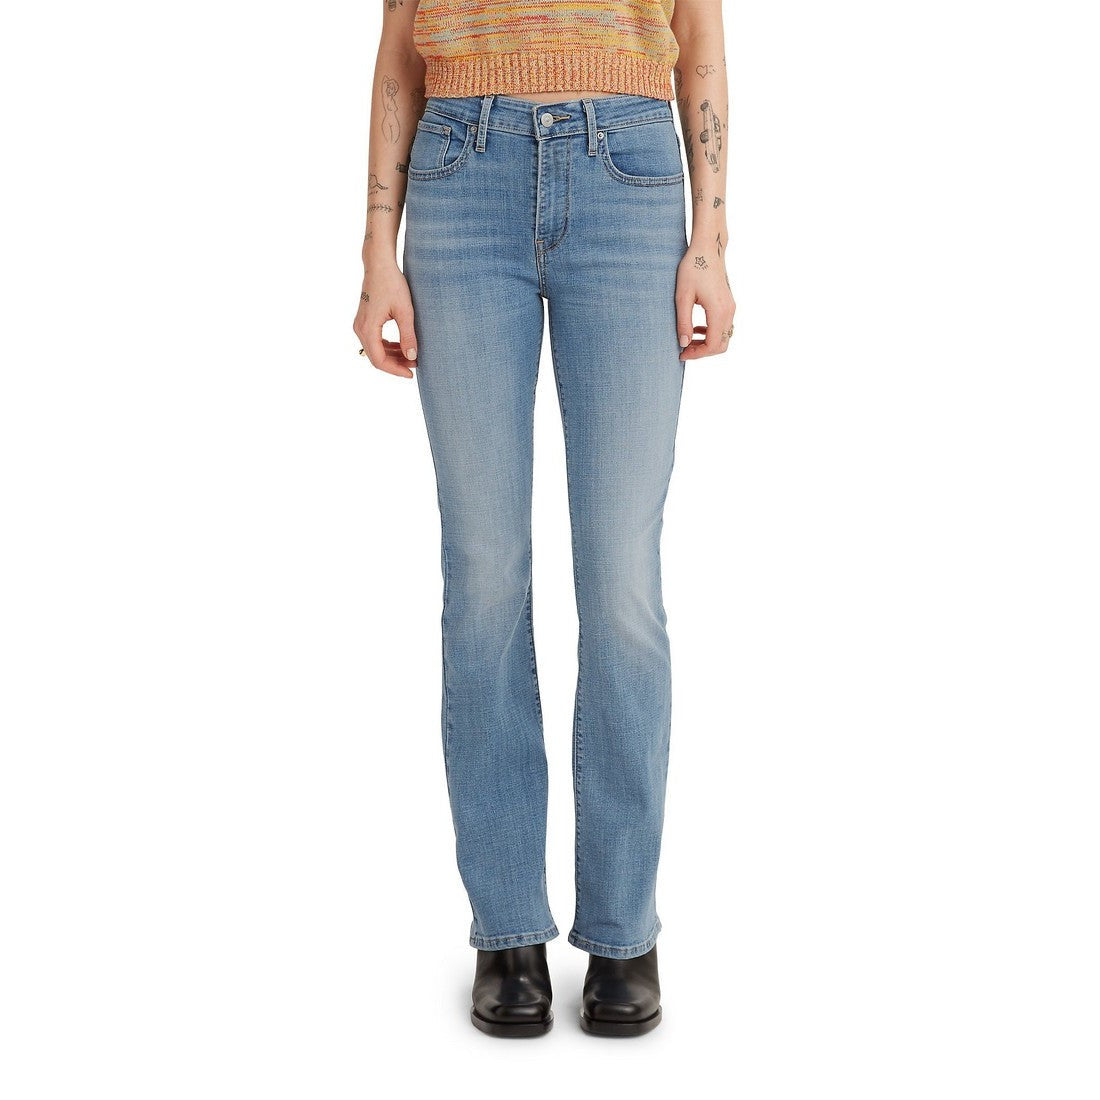 Levi Women's 725 Heritage Bootcut Zip Jeans - Wait Up (Vintage Light/Mid Wash)